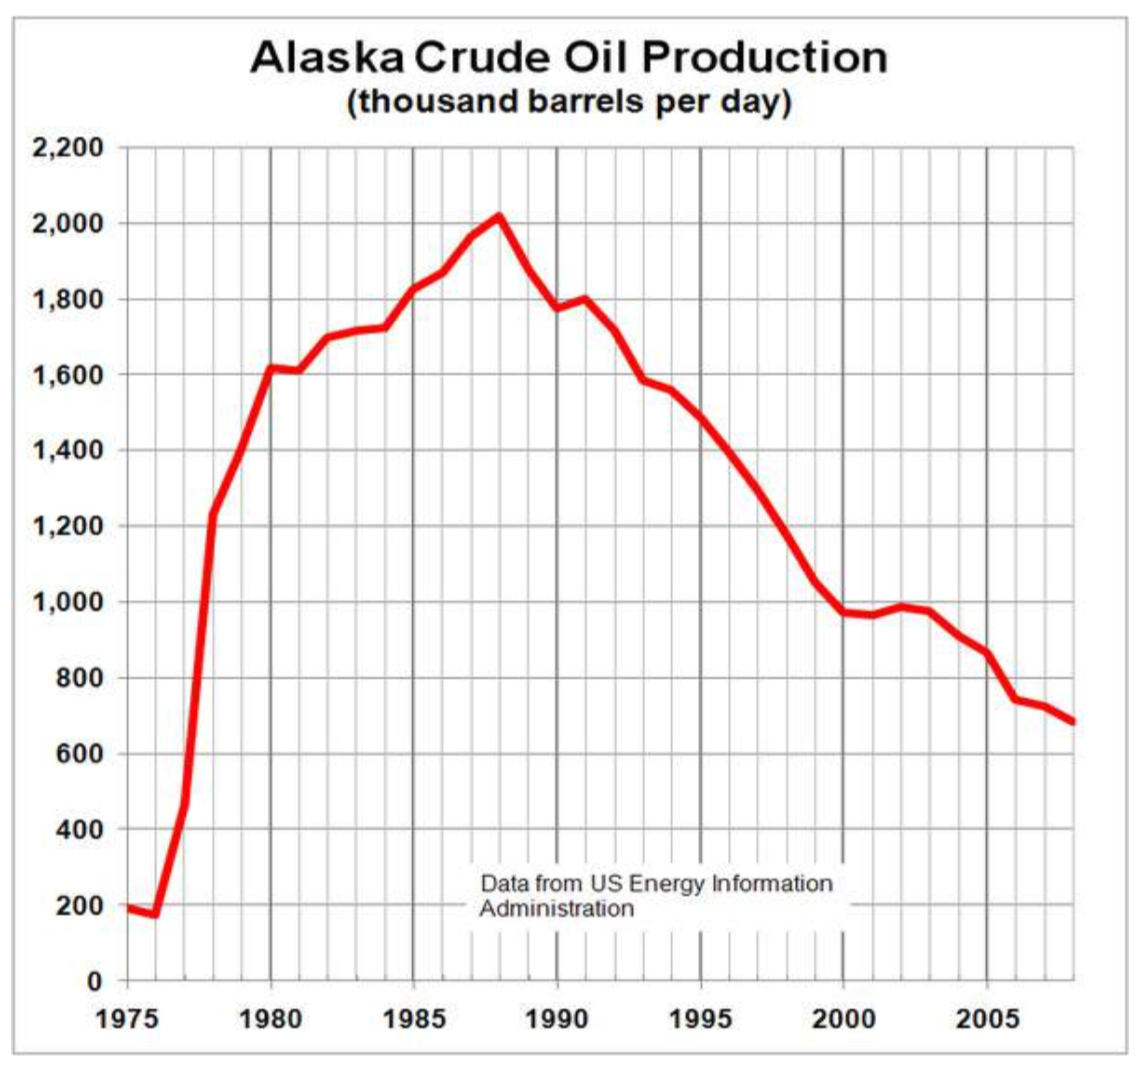 Una gráfica etiquetada como Alaska Crude Oil Production en miles de barriles diarios, con el eje horizontal mostrando los años de 1975 a 2008, y el eje vertical de 0 a 2200. El gráfico comienza en 1975 alrededor de 200, baja un poco a alrededor de 180, aumenta hasta aproximadamente 2010 en 1988, luego baja a aproximadamente 700 en 2008.